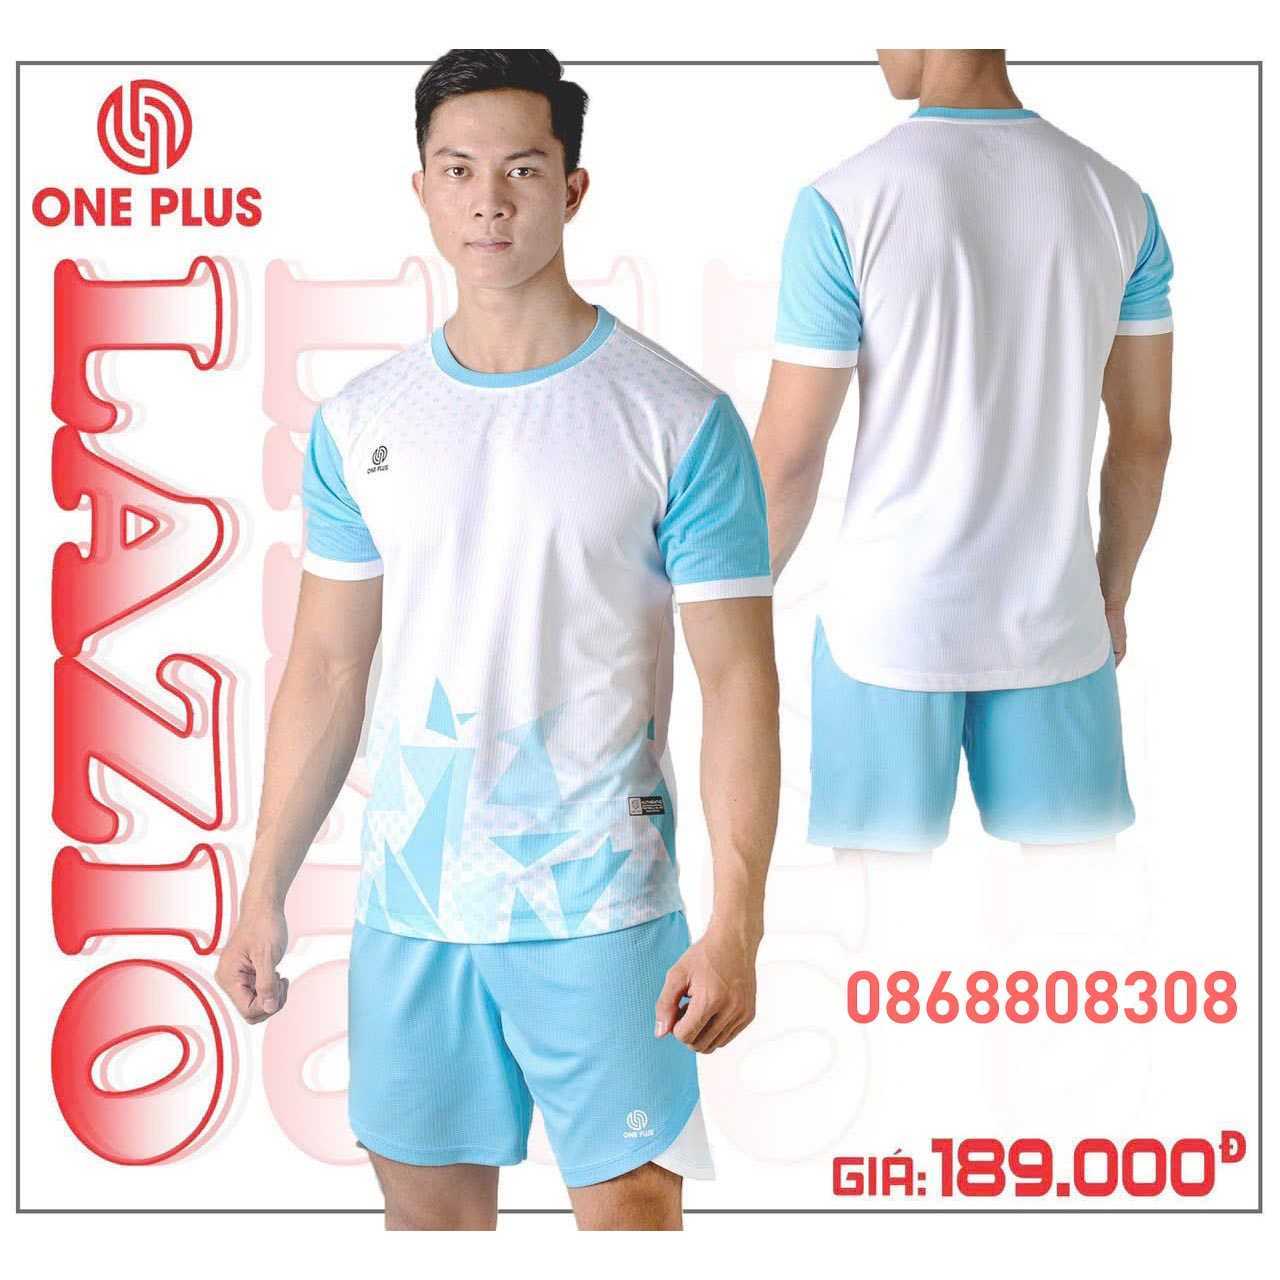 Bộ quần áo bóng đá phủi thiết kế chính hãng One Plus lazio vải dệt kim nhiều màu đẹp mới xanh biển